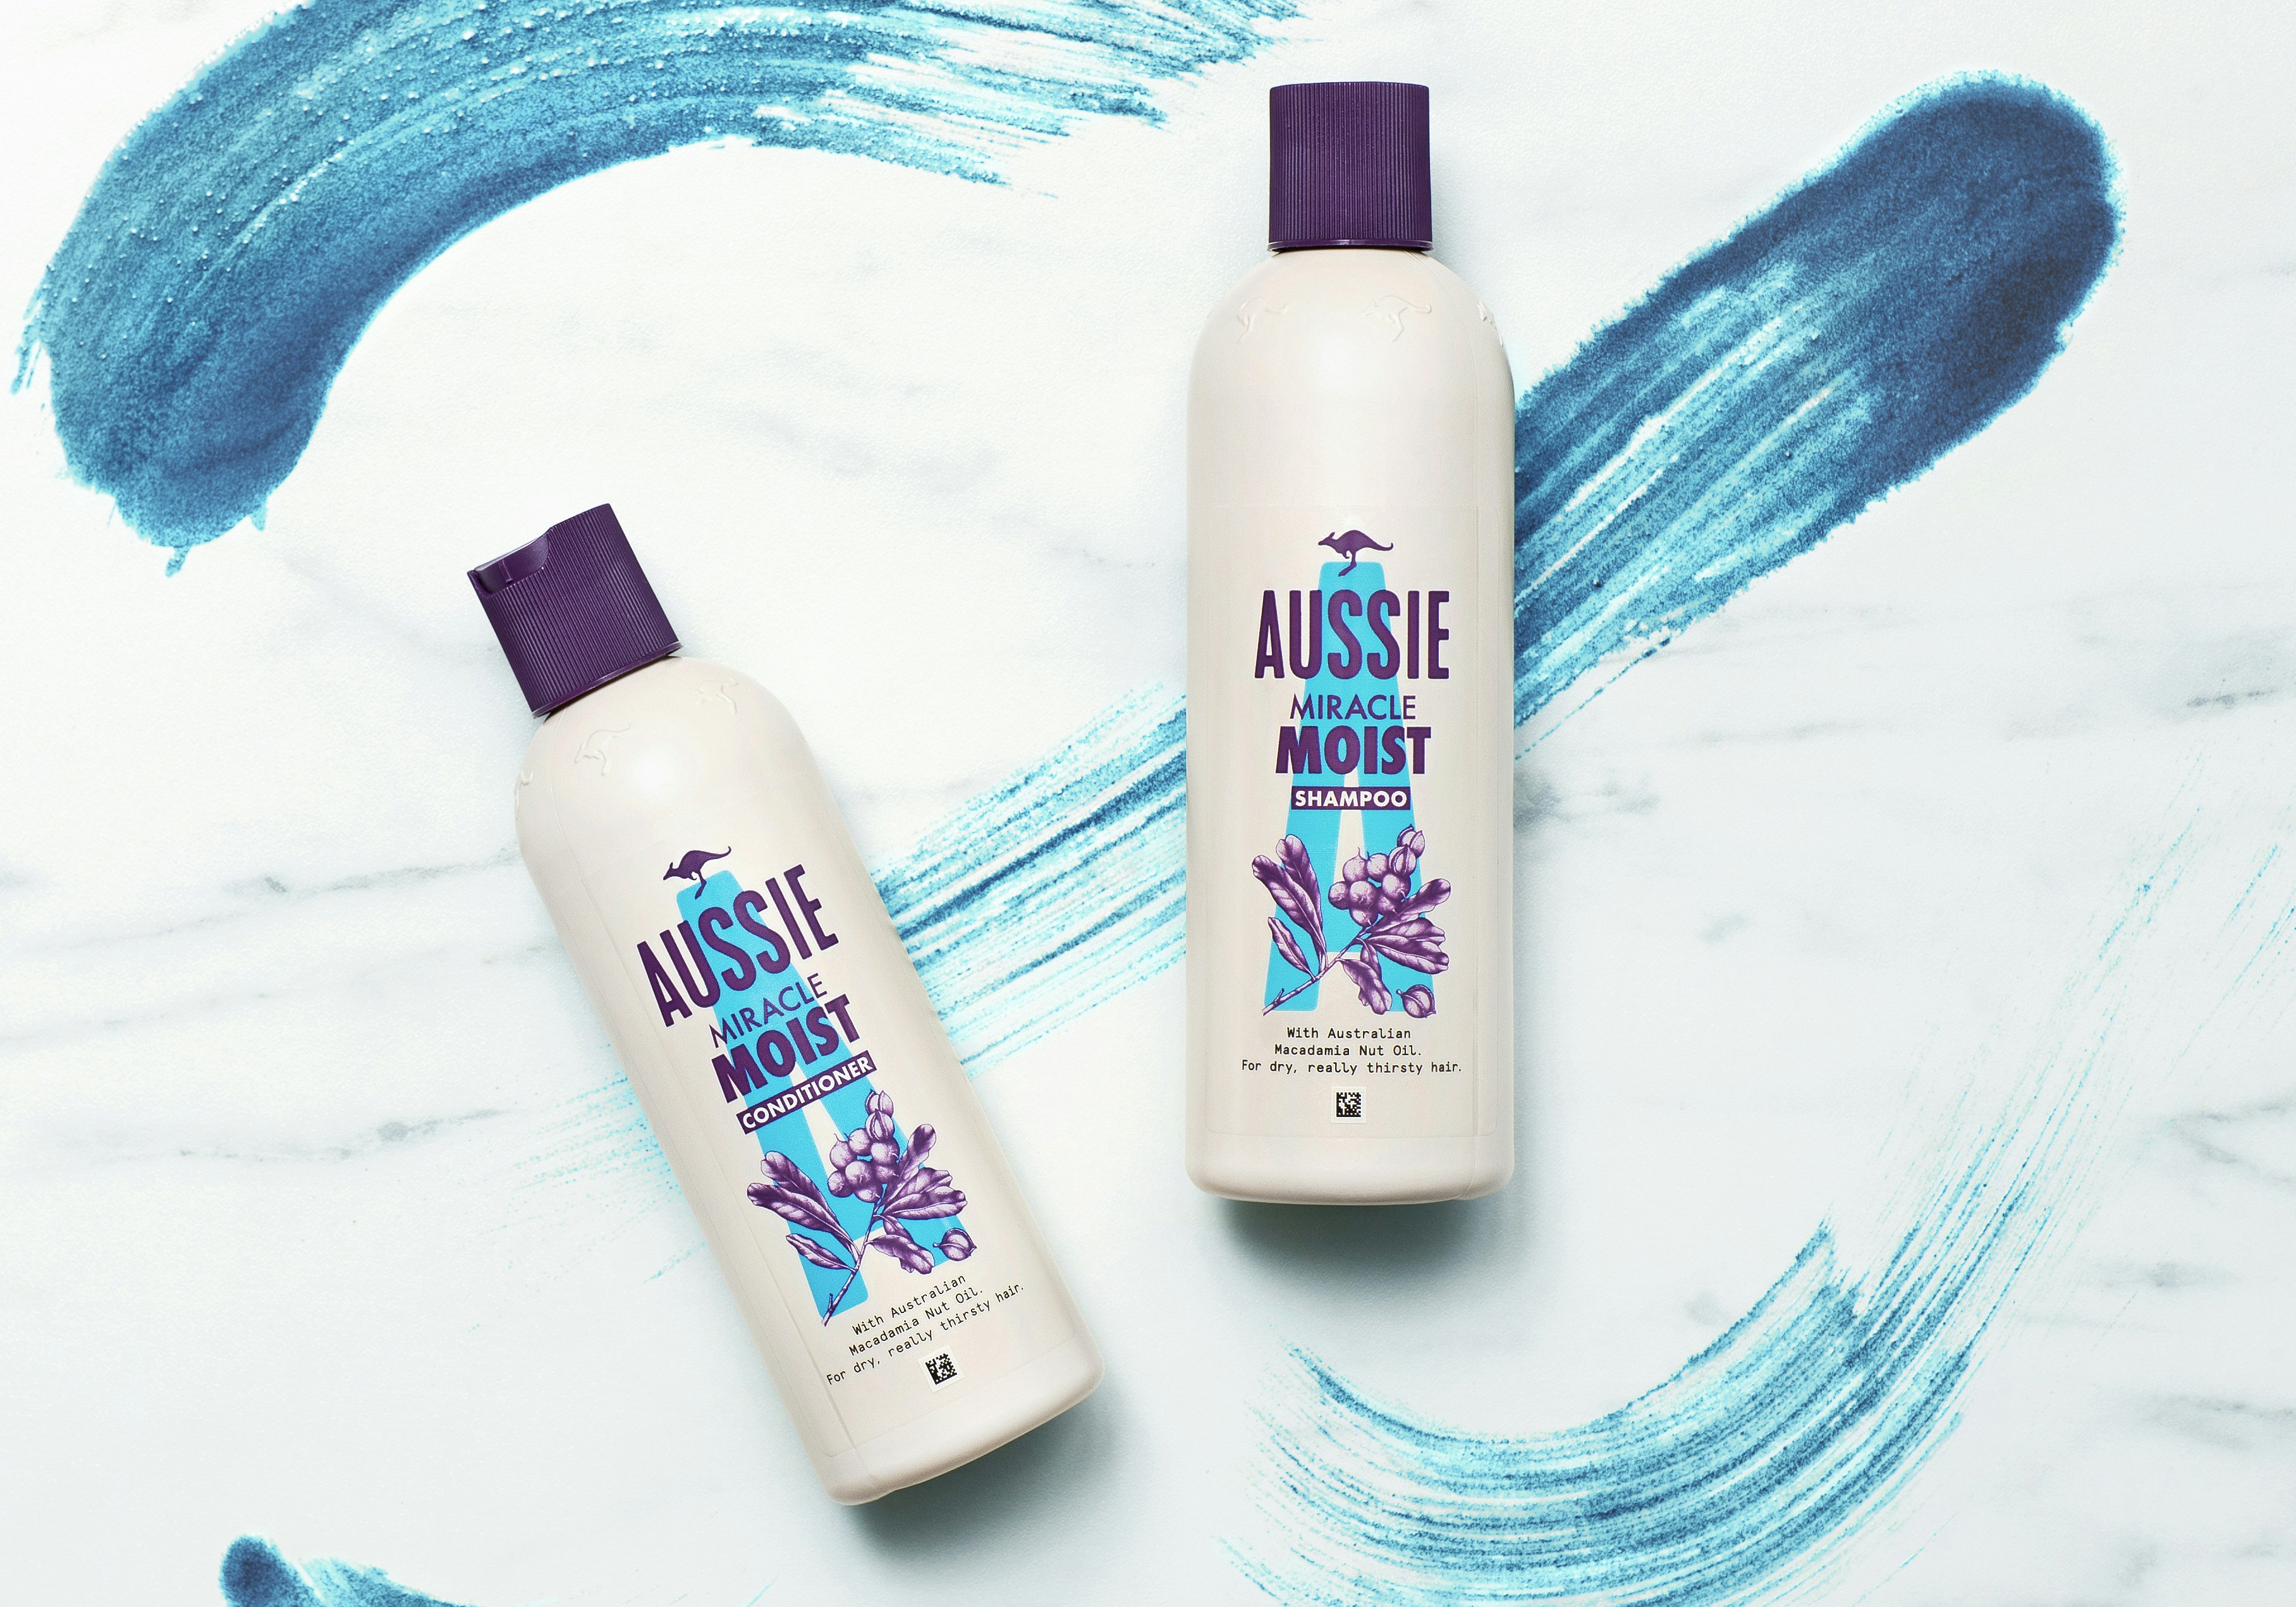 Aussie miracle moist shampoo